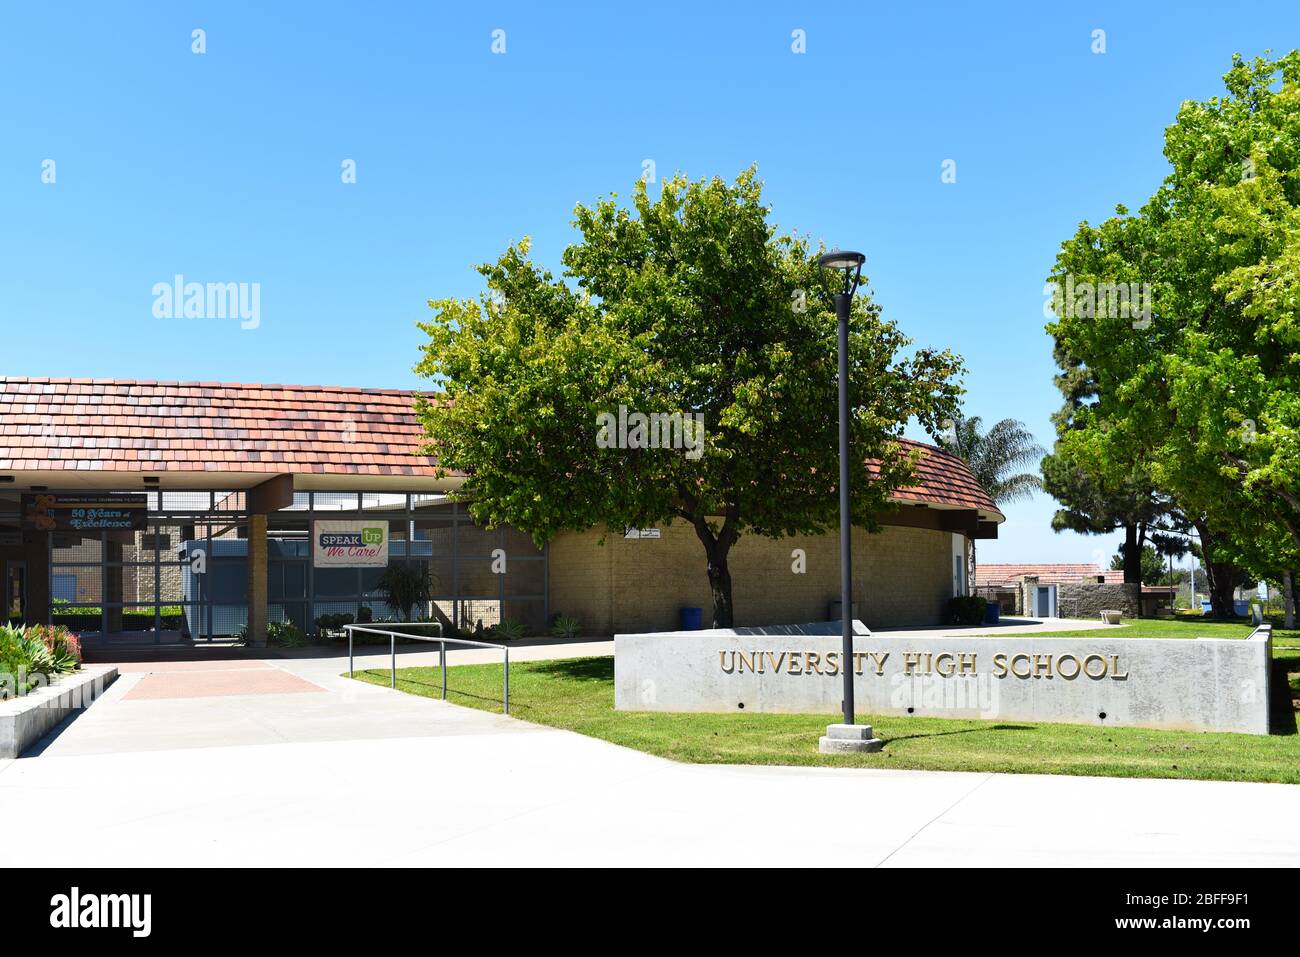 IRVINE, CALIFORNIA - 16 APRILE 2020: Ingresso alla University High School, la prima scuola superiore di Irvine, è una scuola pubblica di alto livello nella contea di Orange Foto Stock